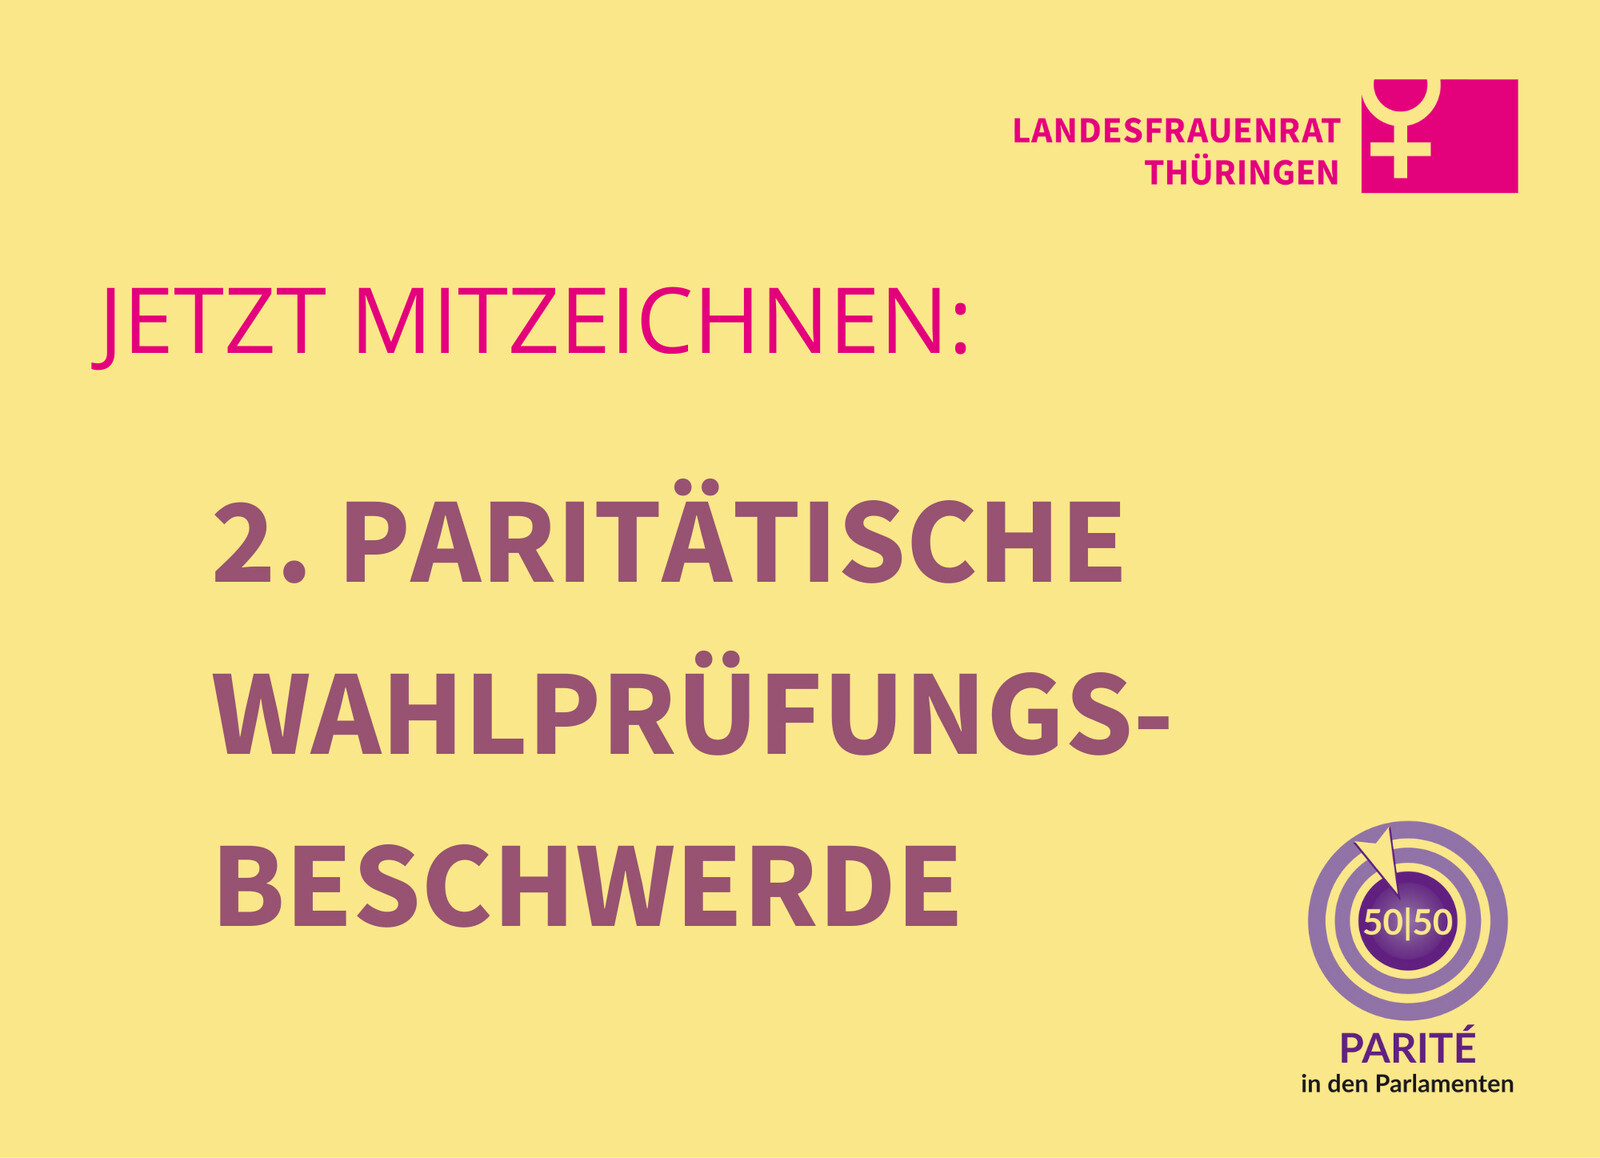 Aufruf des Vereins Parité in den Parlamenten und des Landesfrauenrats Thüringen zur Mitzeichnung der Zweiten Paritätische Wahlprüfbeschwerde